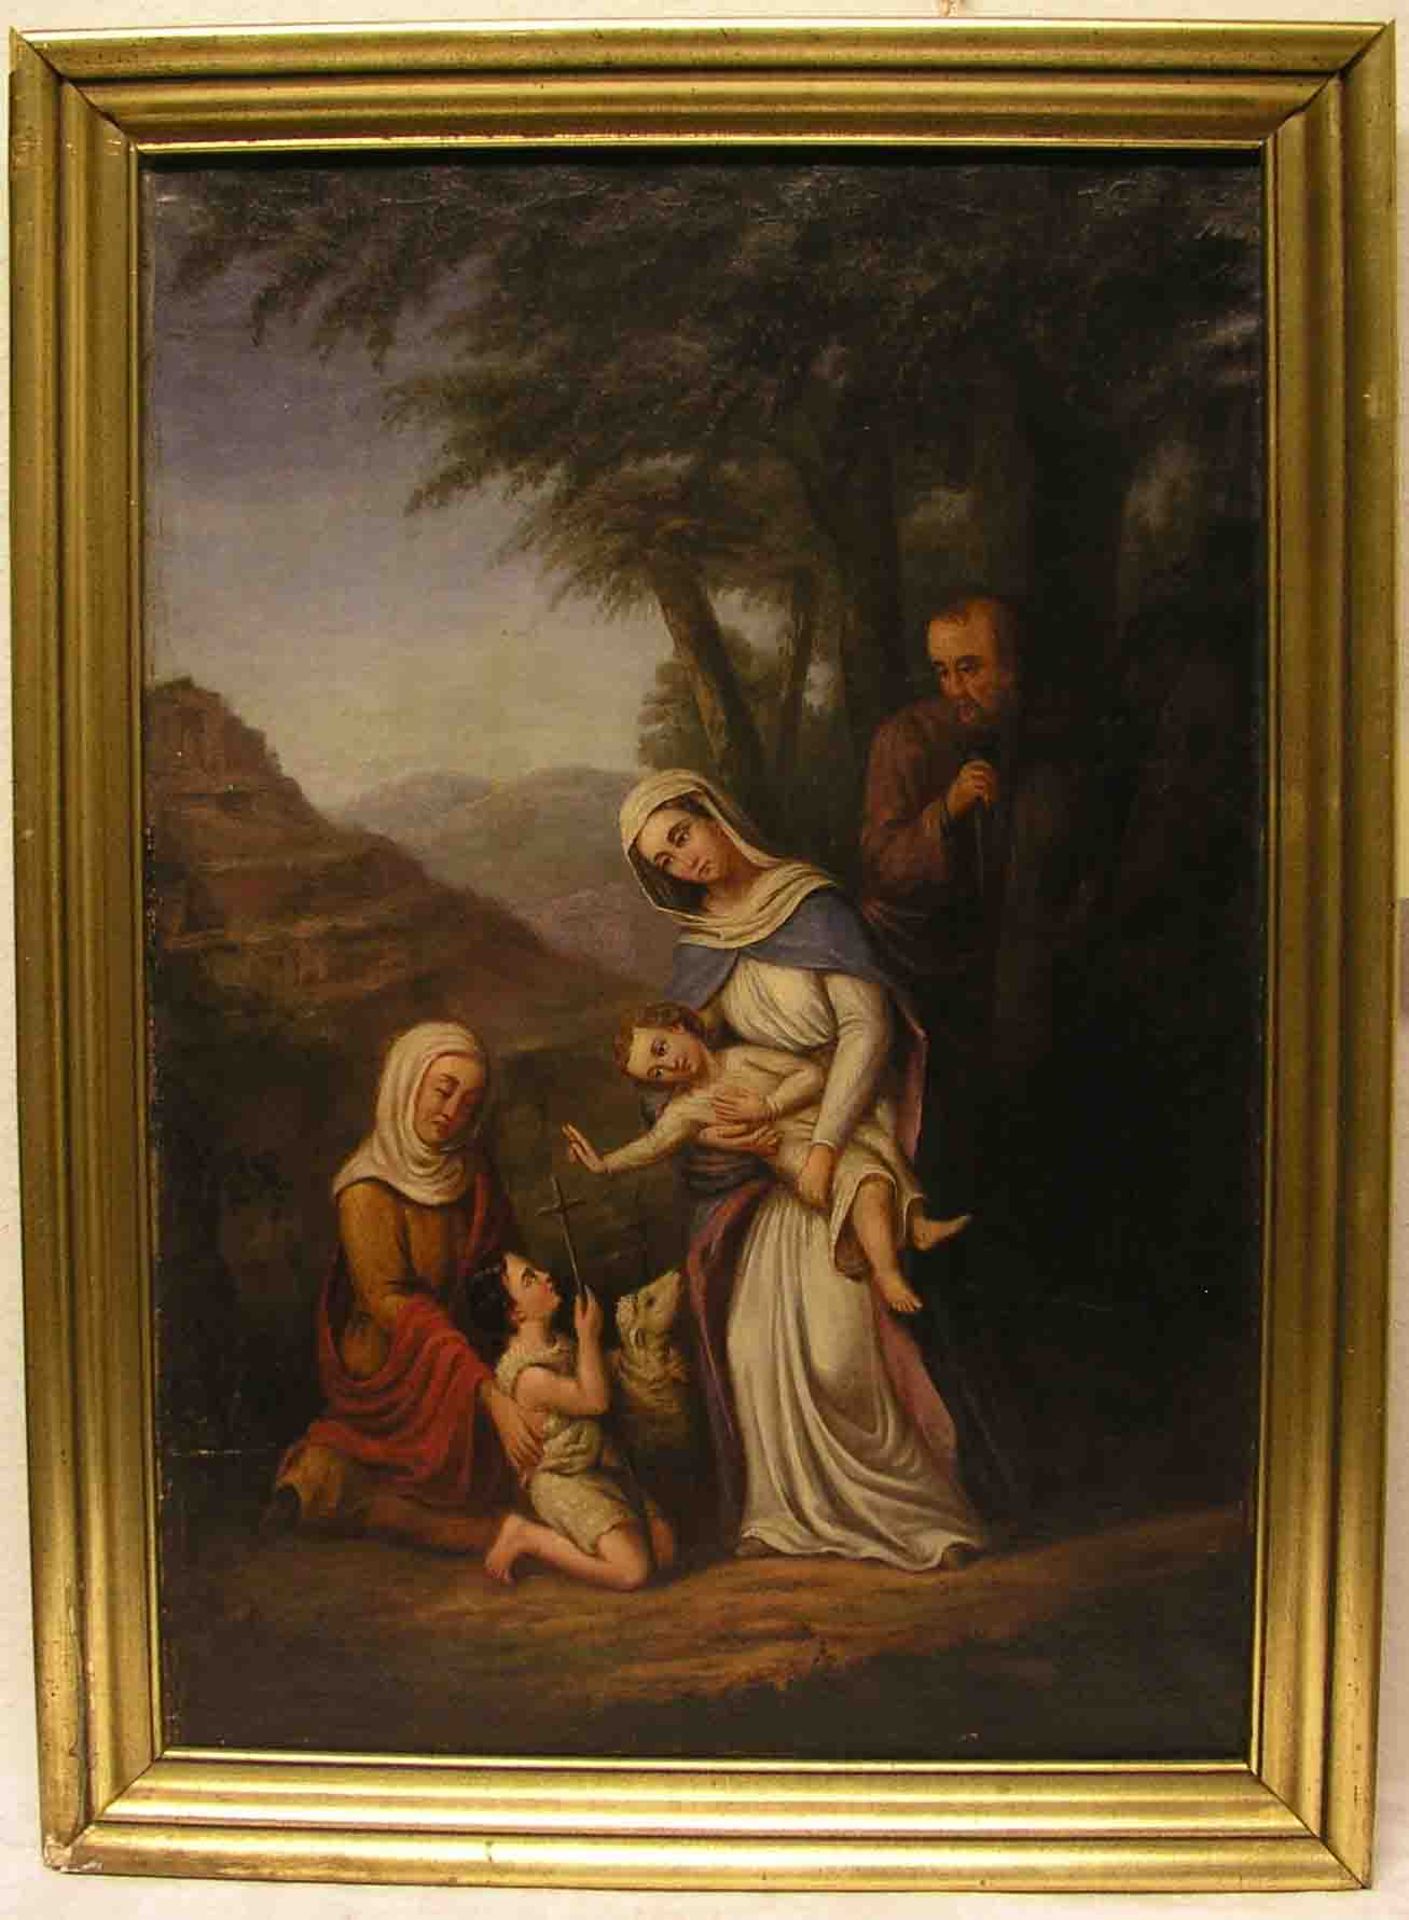 Unbekannt 19. Jh.: "Hl. Familie mit Johannes Knaben und Hl. Anna". Öl/Lwd. 87 x 54cm,Rahmen.- - -